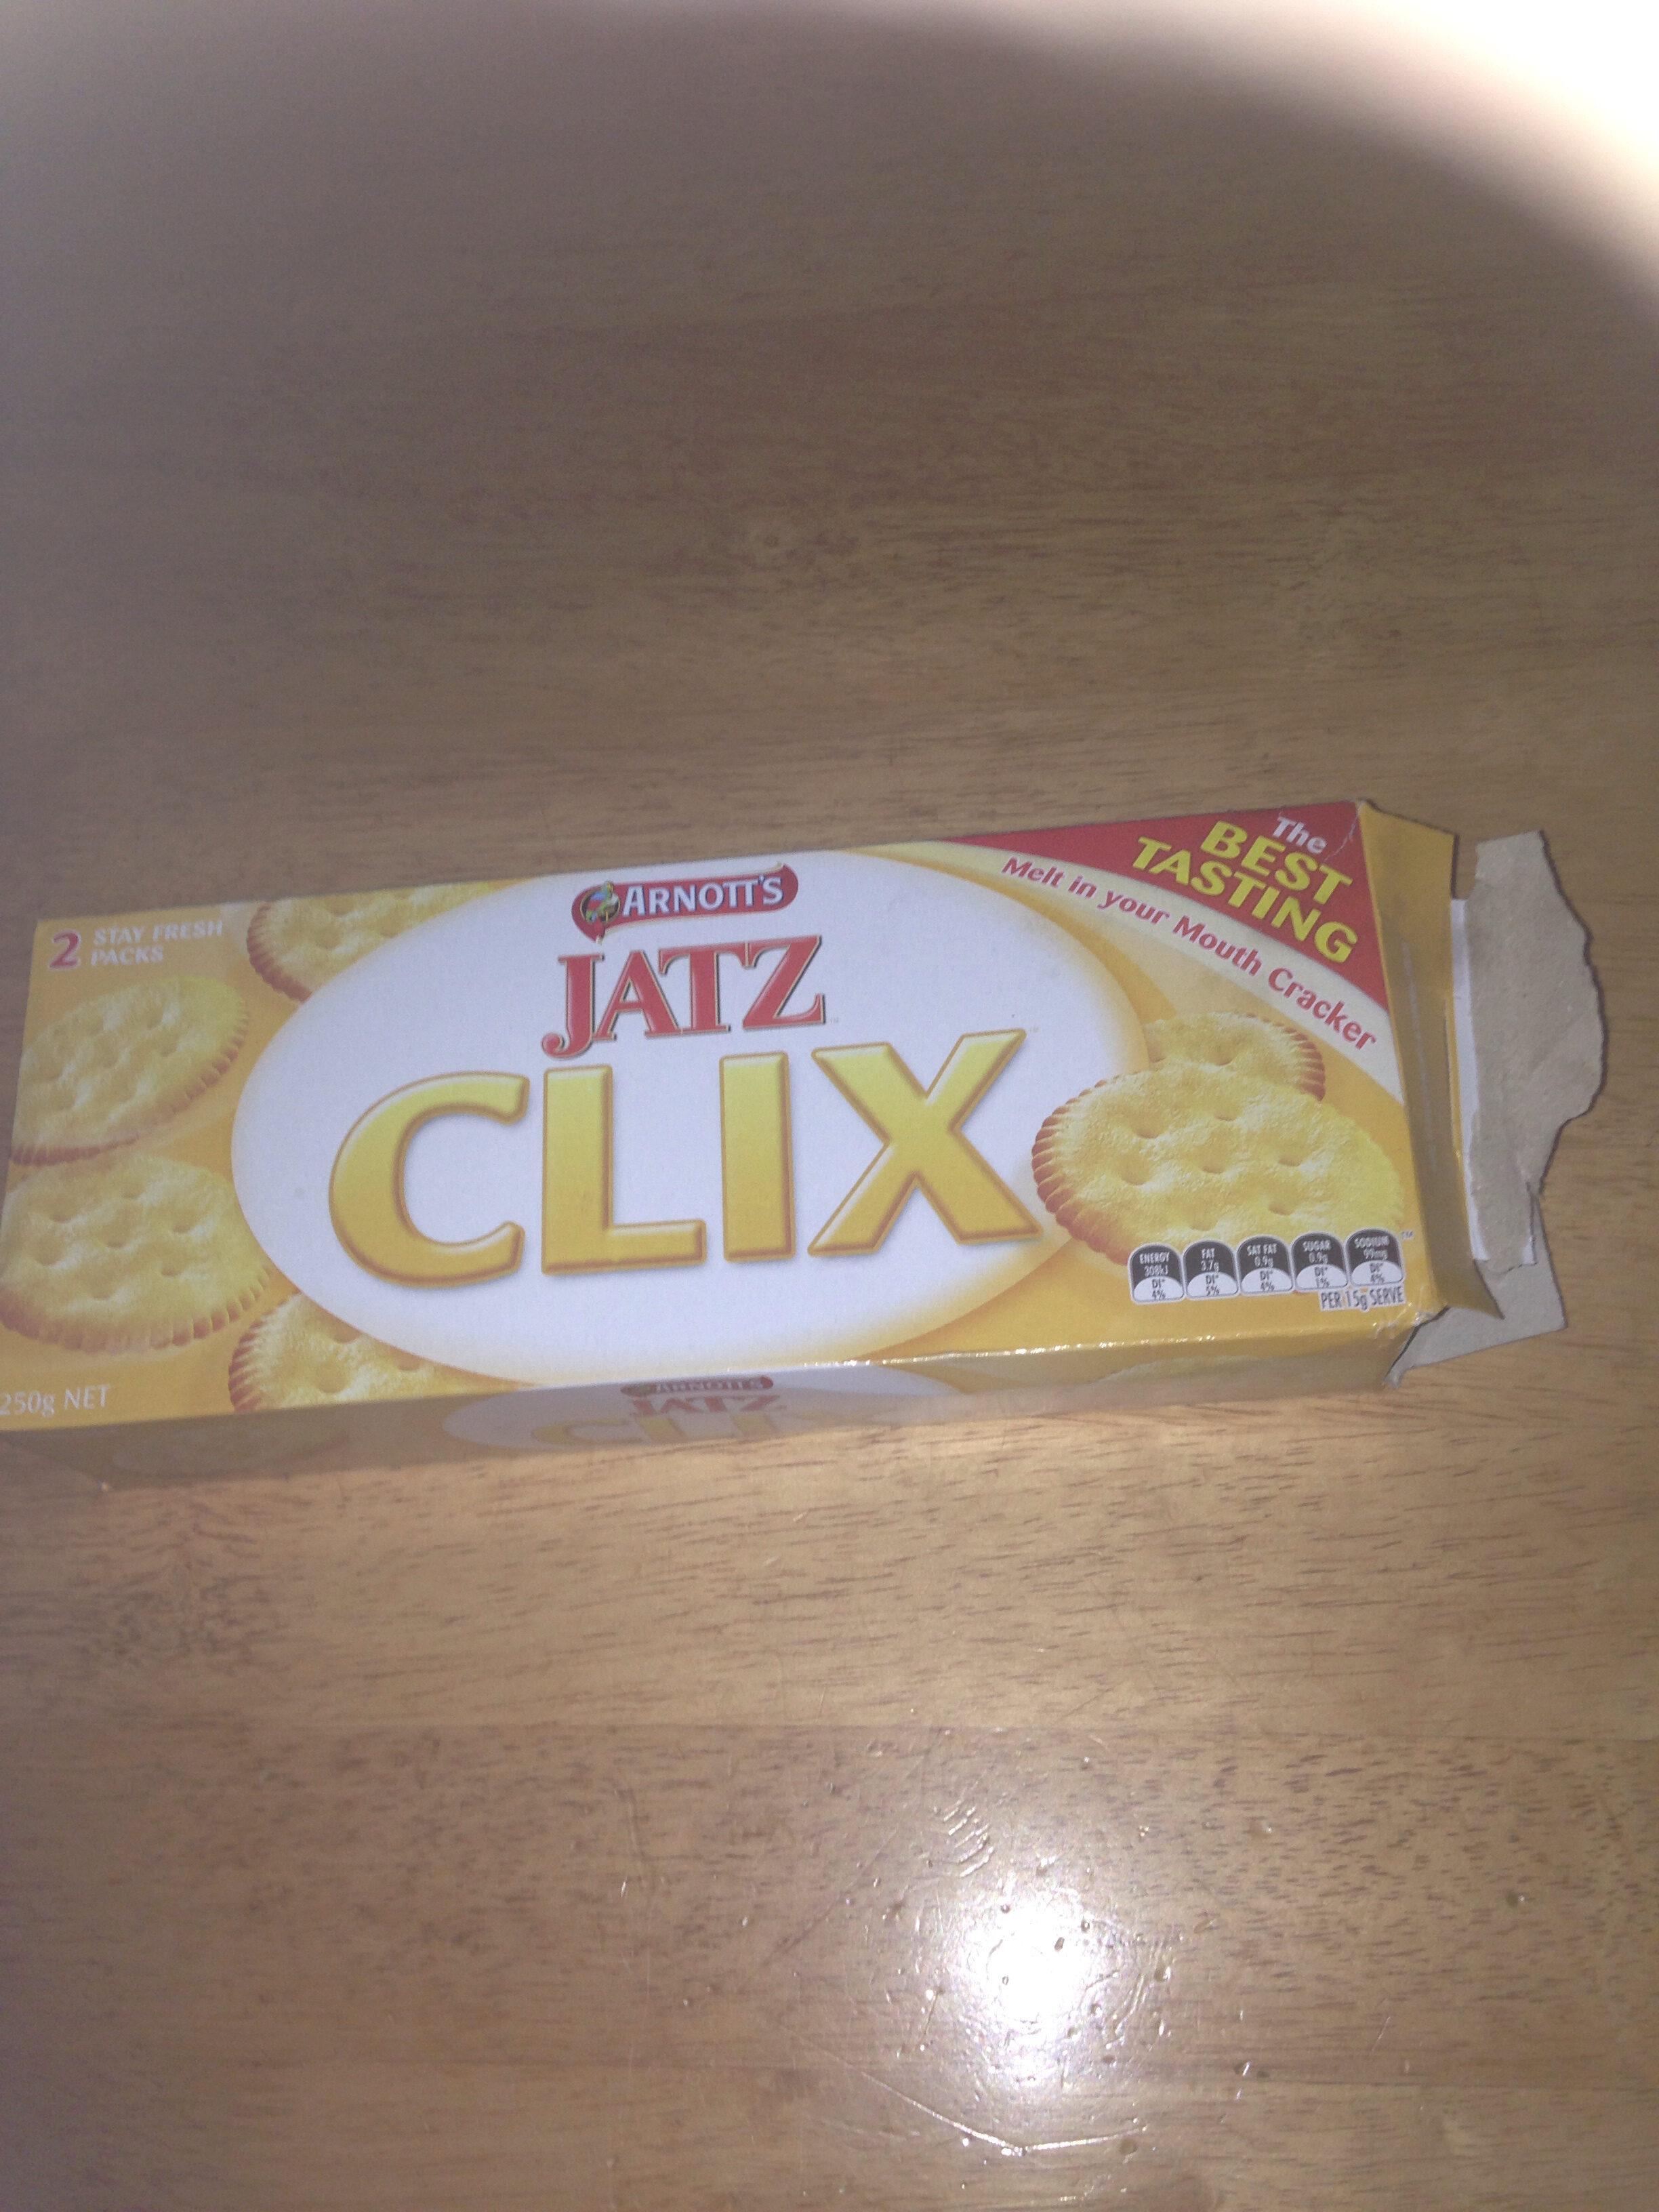 Jatz Clix Arnott's - Product